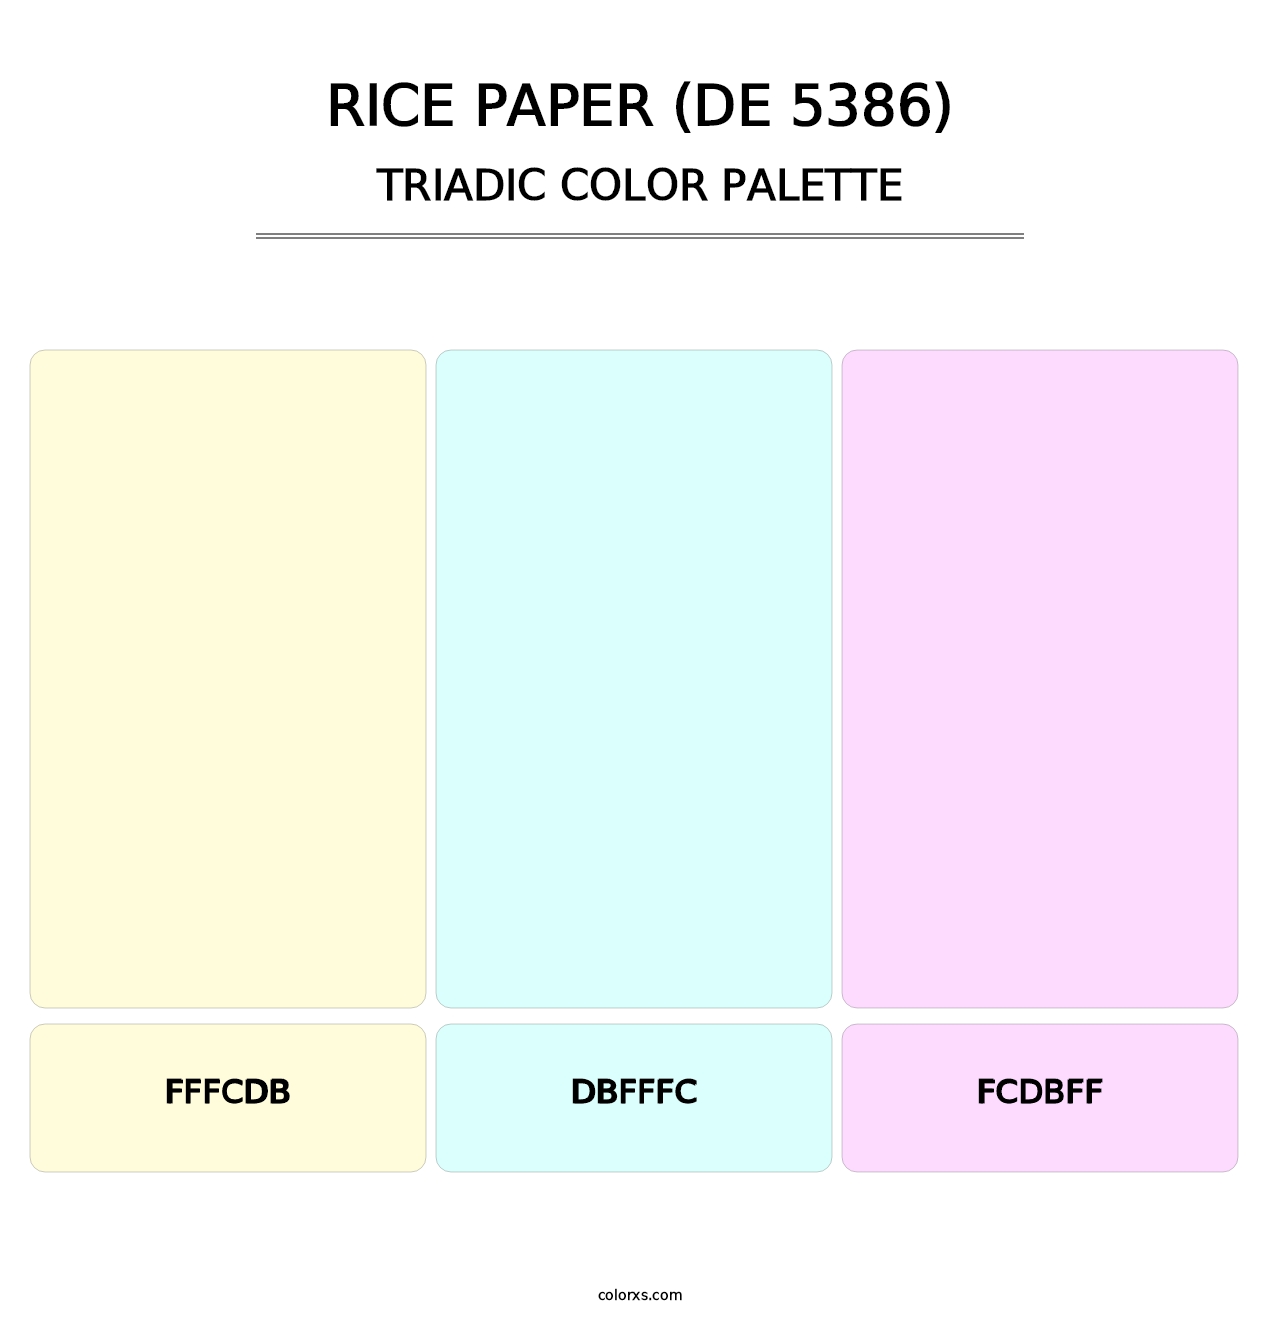 Rice Paper (DE 5386) - Triadic Color Palette